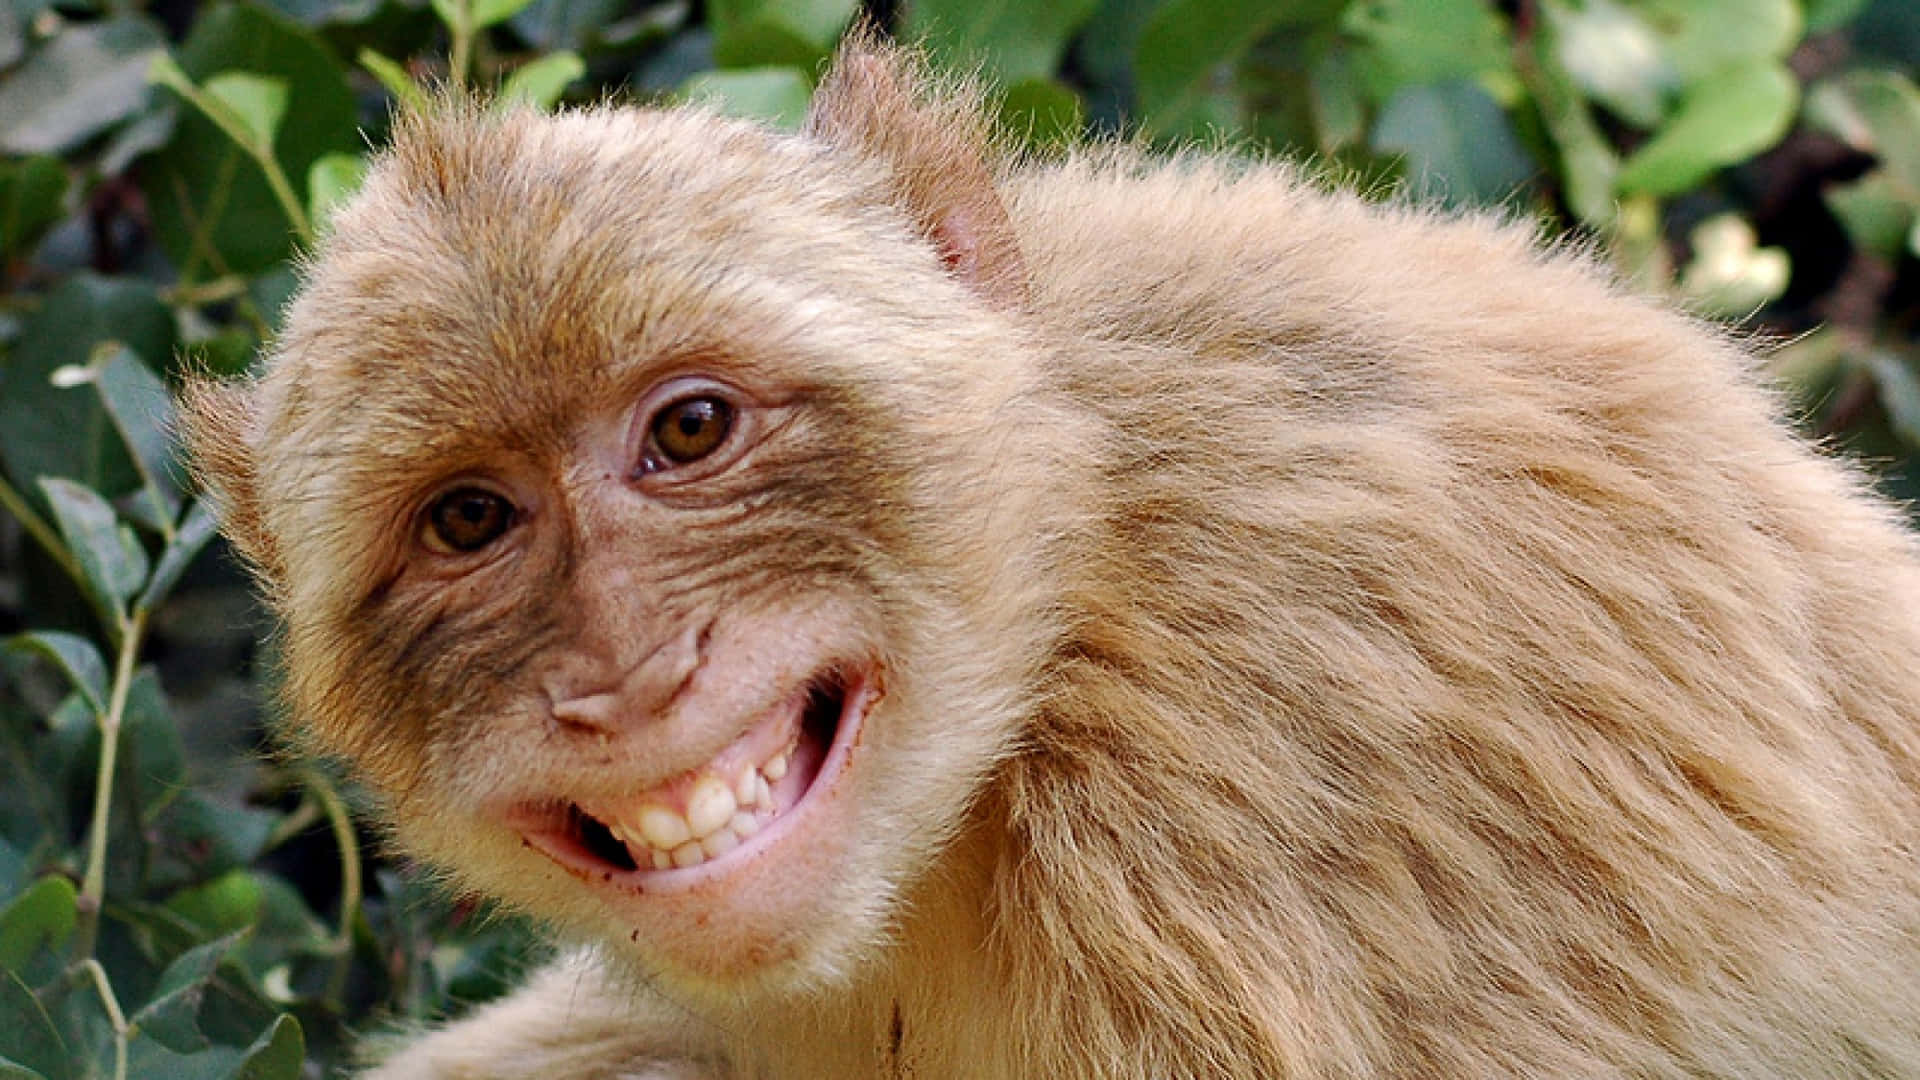 Cheguebem Perto Da Vida Selvagem E Explore A Natureza Com Esse Lindo Macaco!